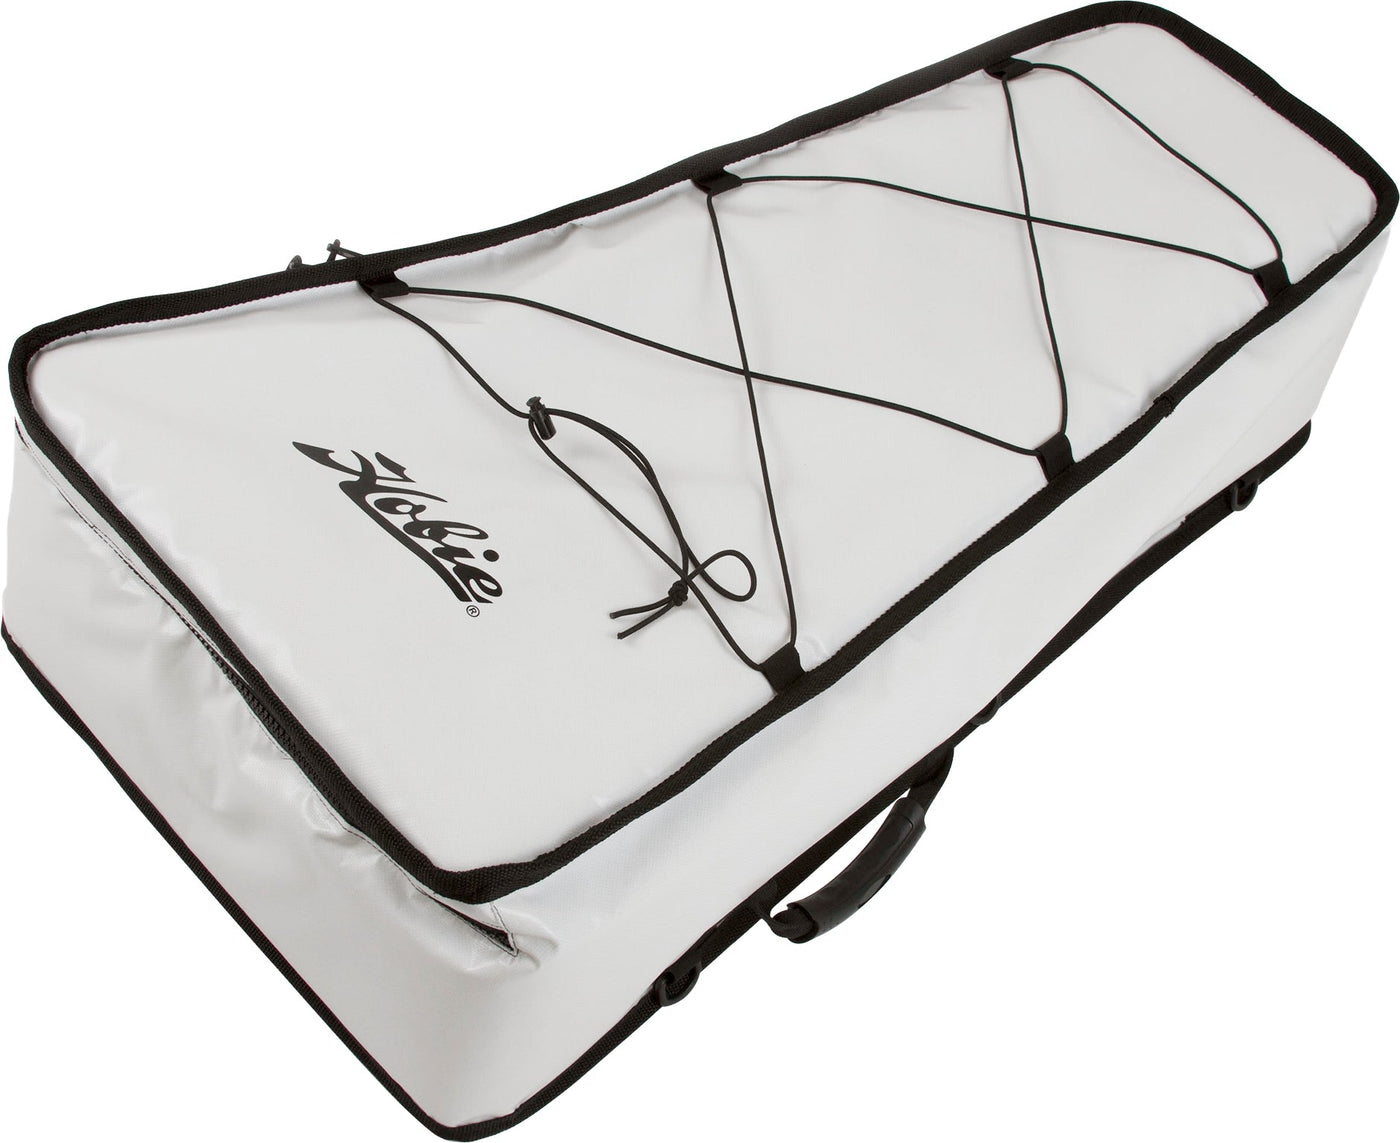 Hobie Kayak Fish Bag Coolers – Fishing Online